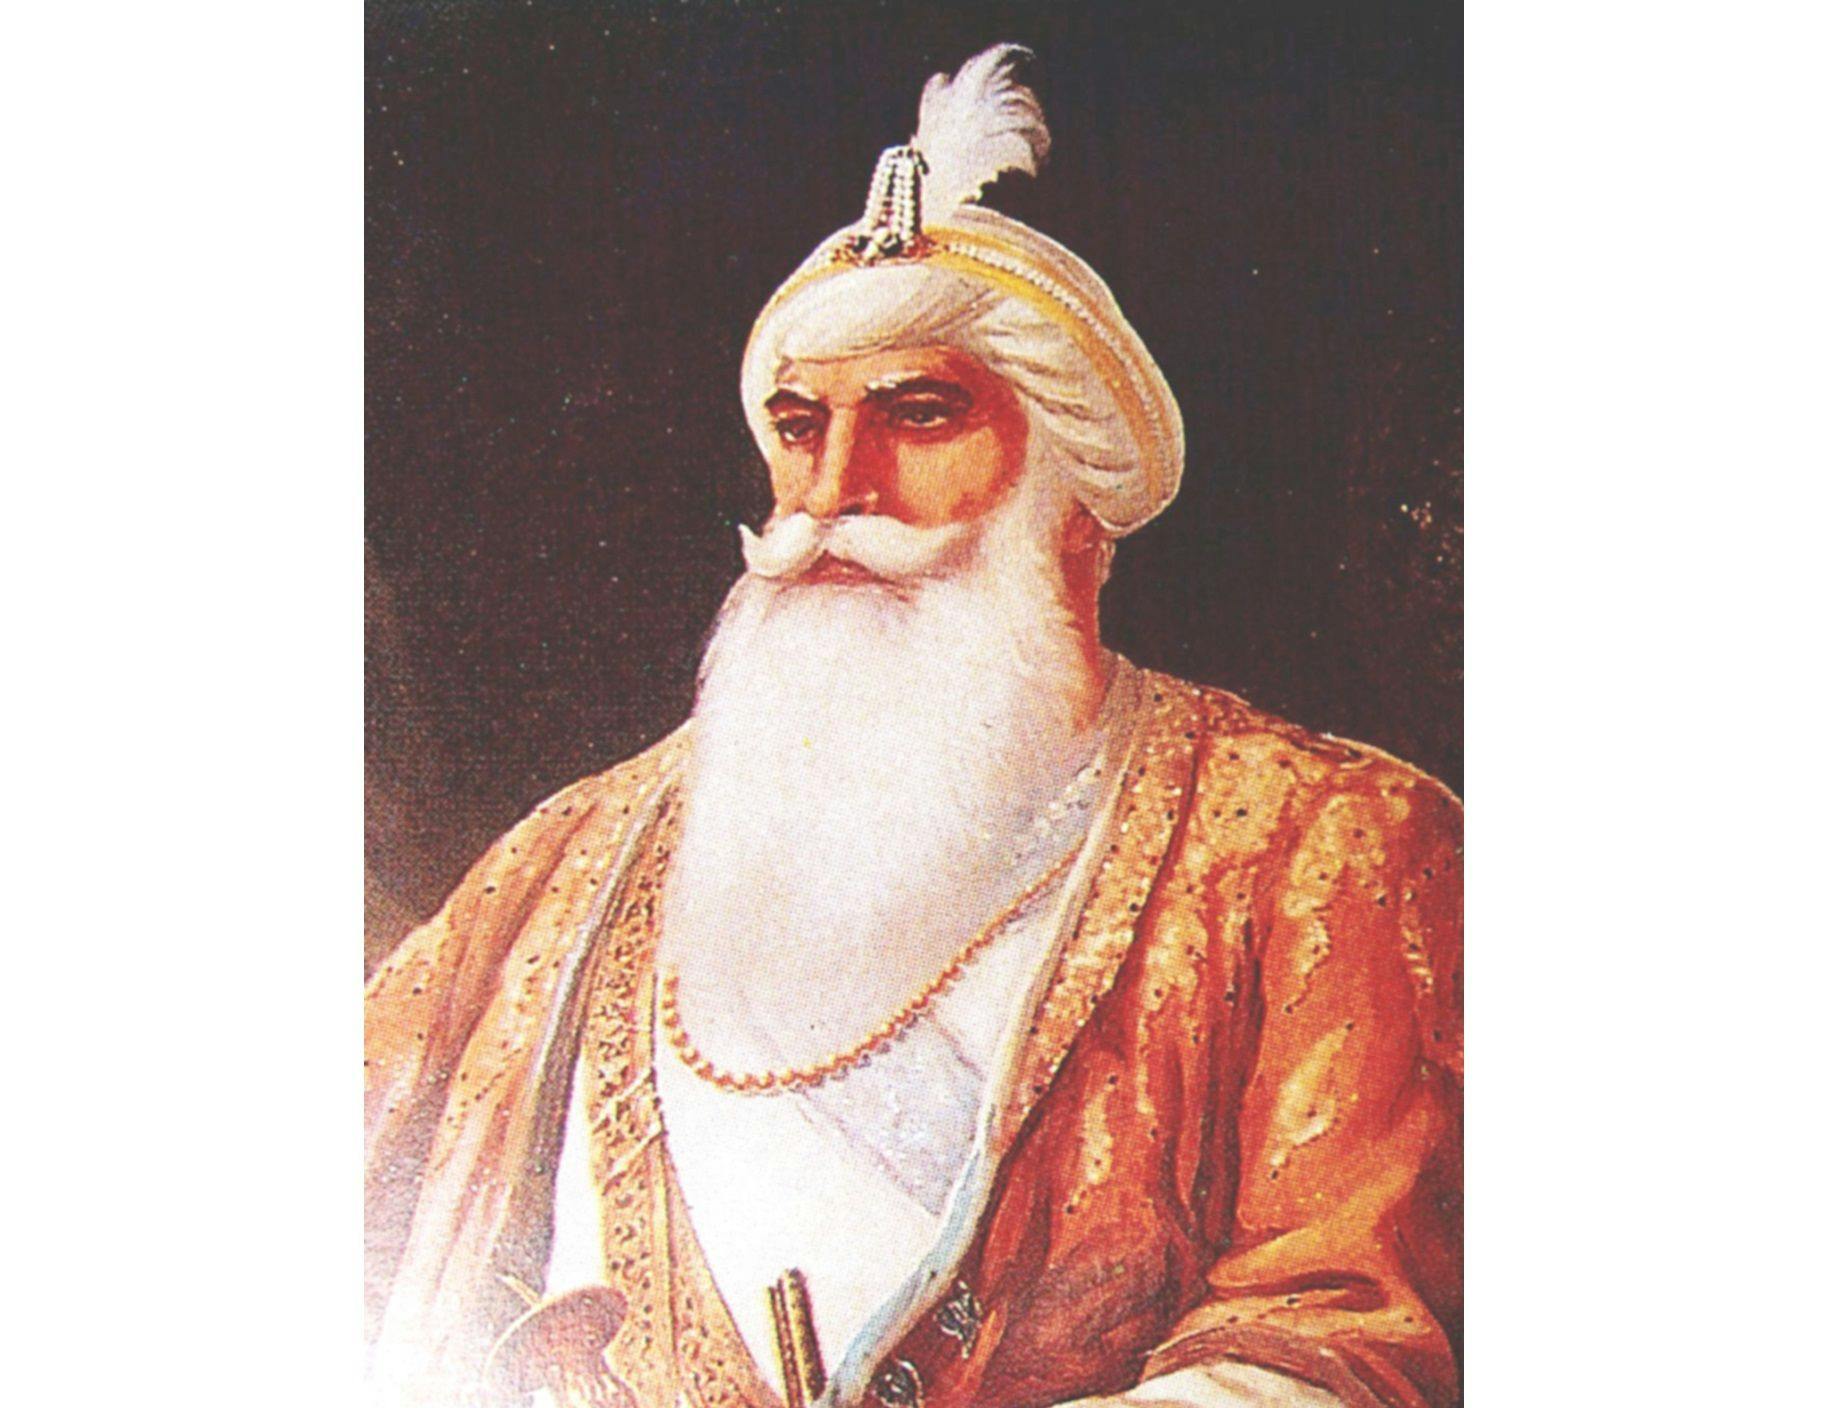 Baba Jassa Singh Ahluwalia